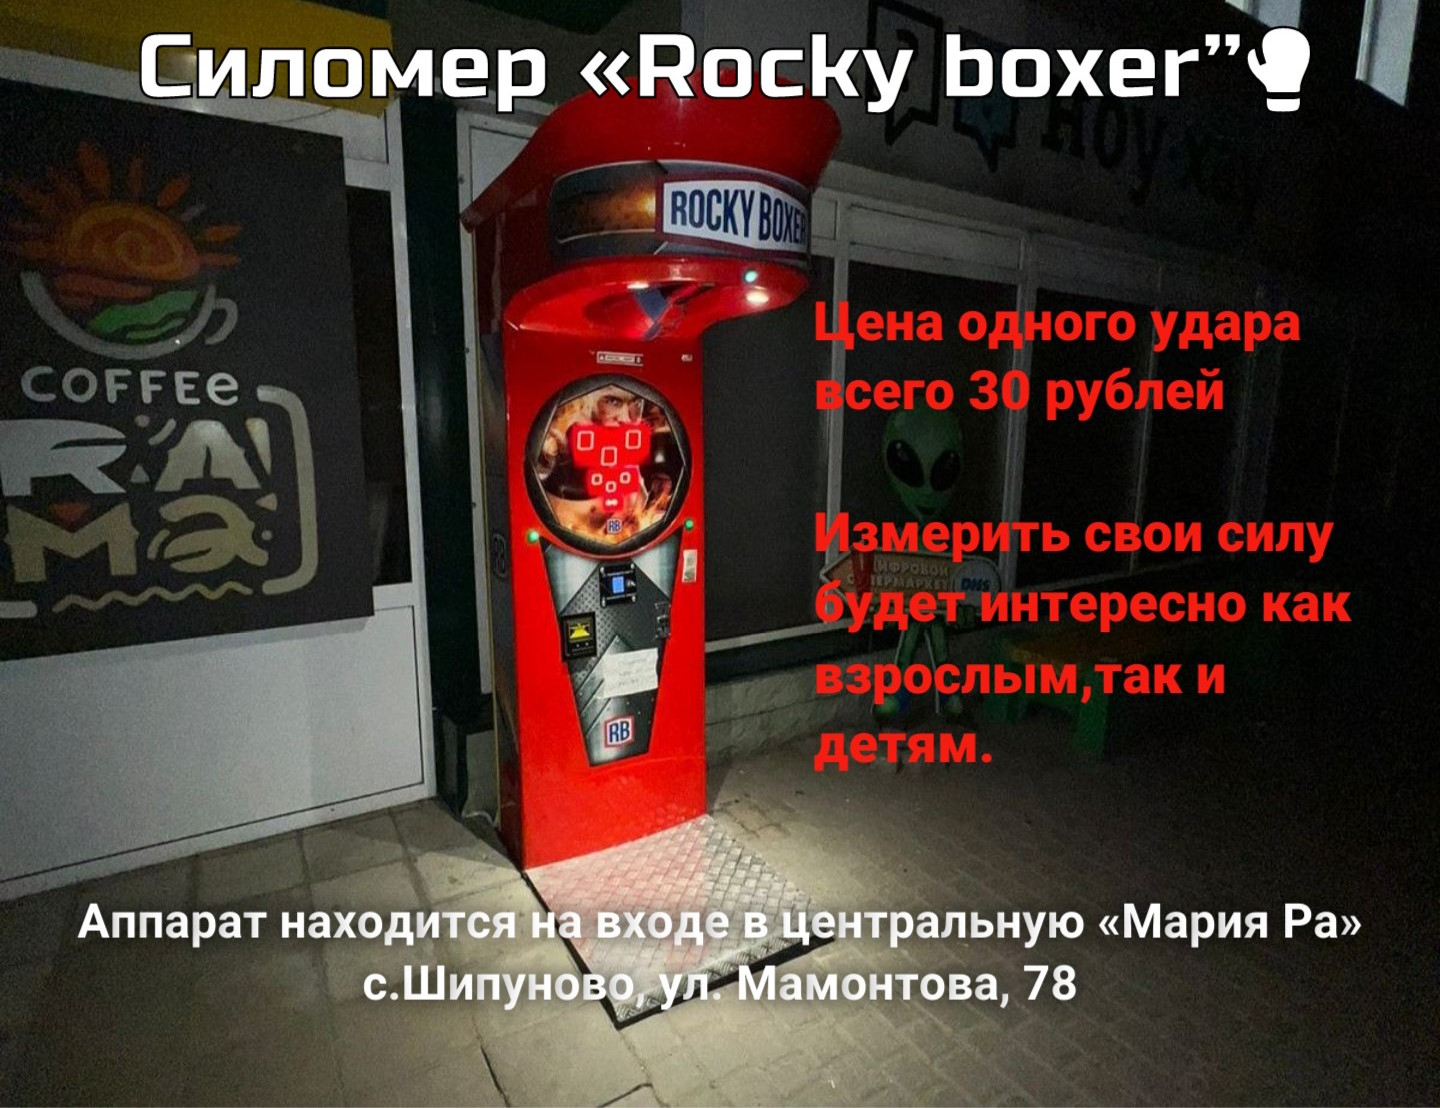 Новшество в Шипуново Силомер "Rocky boxer”